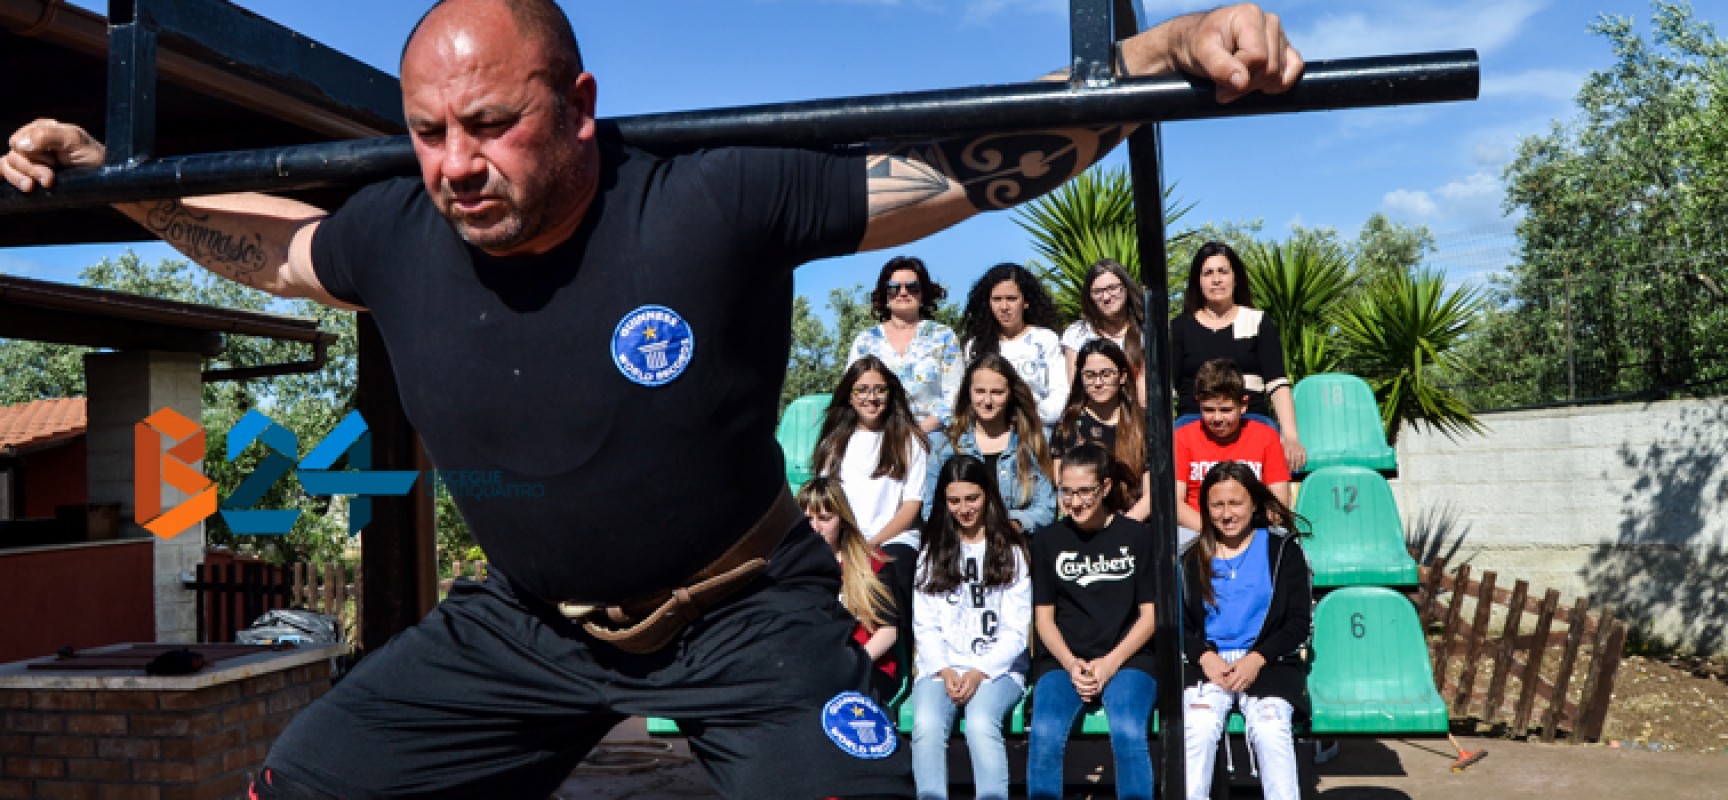 Dieci squat sollevando 12 ragazze: la sfida di Cosimo Ferrucci al Westing World Record